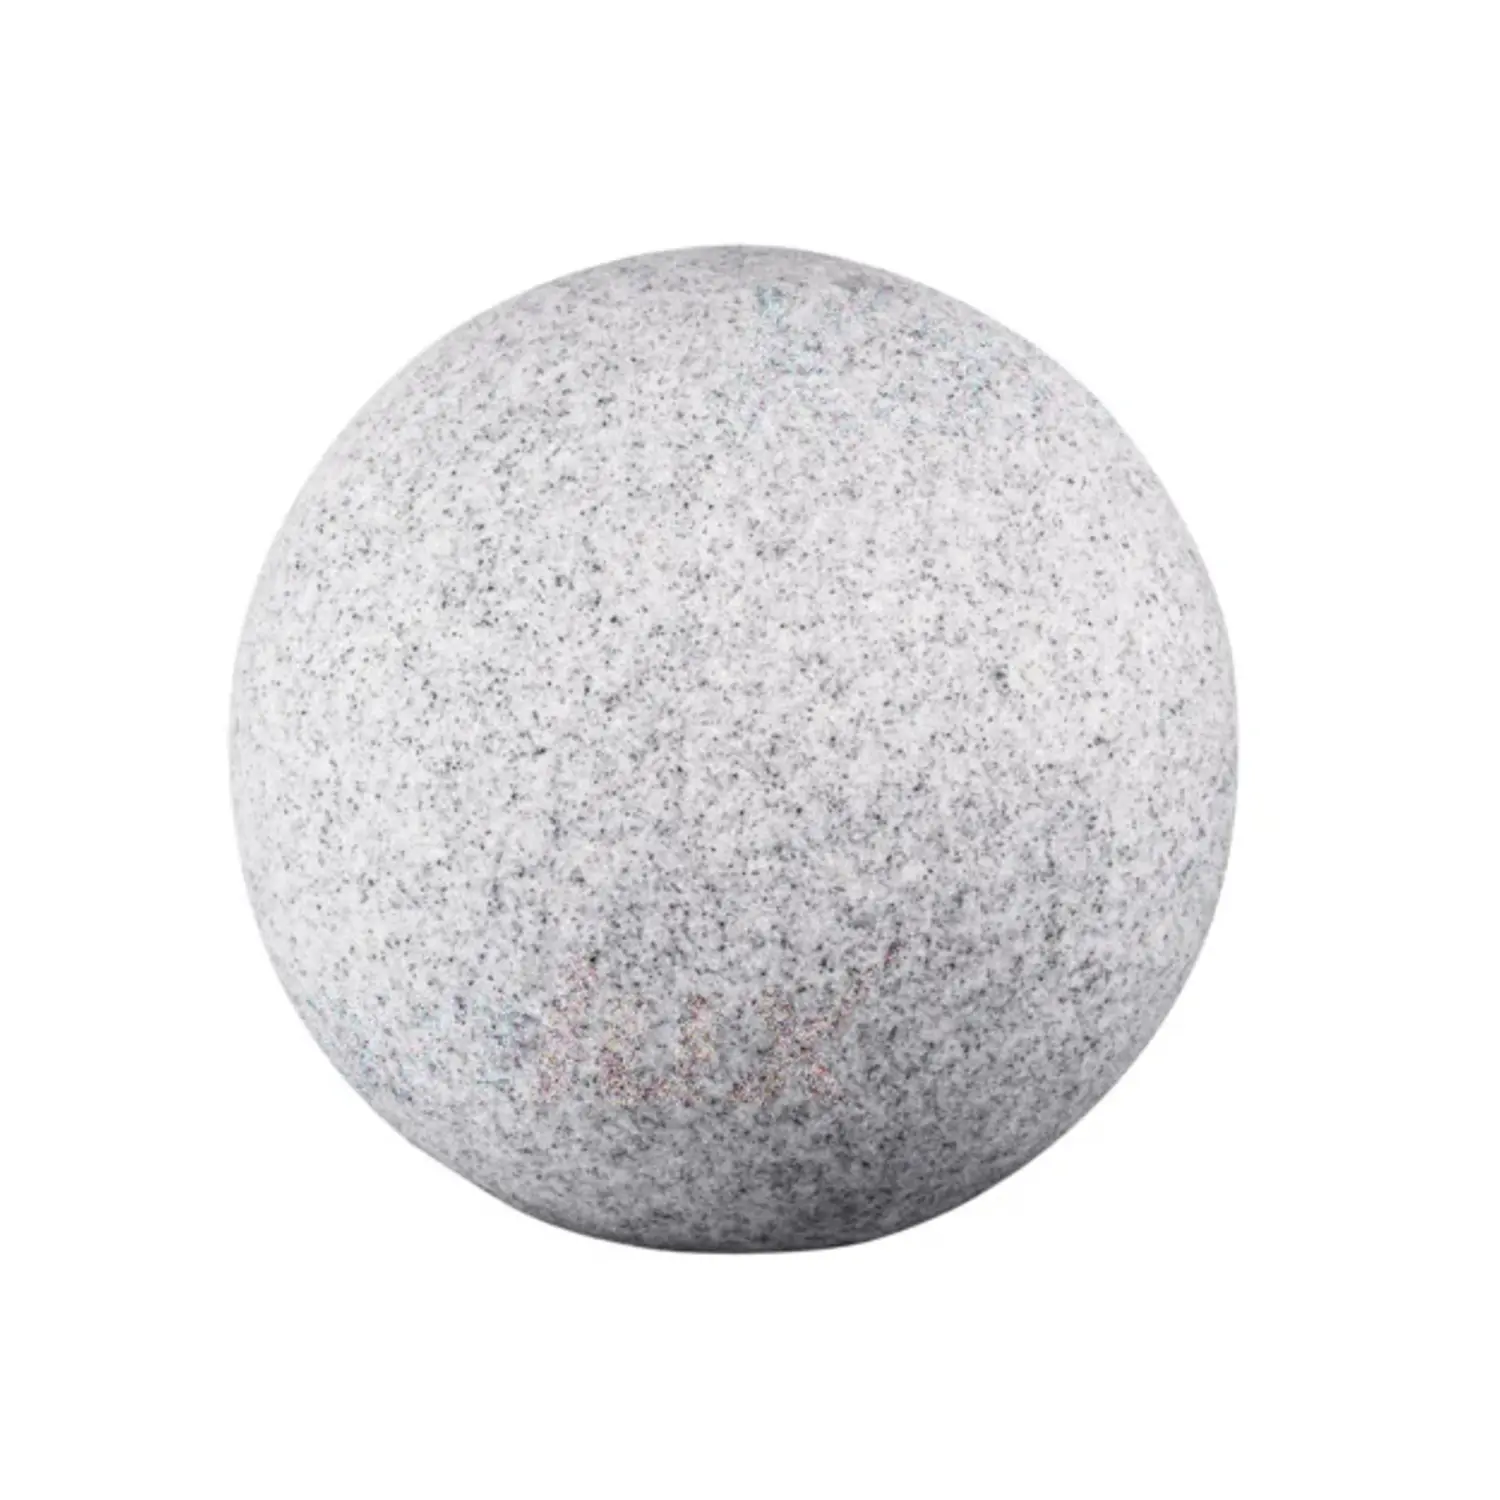 immagine del prodotto lampada da giardino sfera finta pietra IP65 granito esterno E27 CE 300 mm 220-240 volt kan 24651